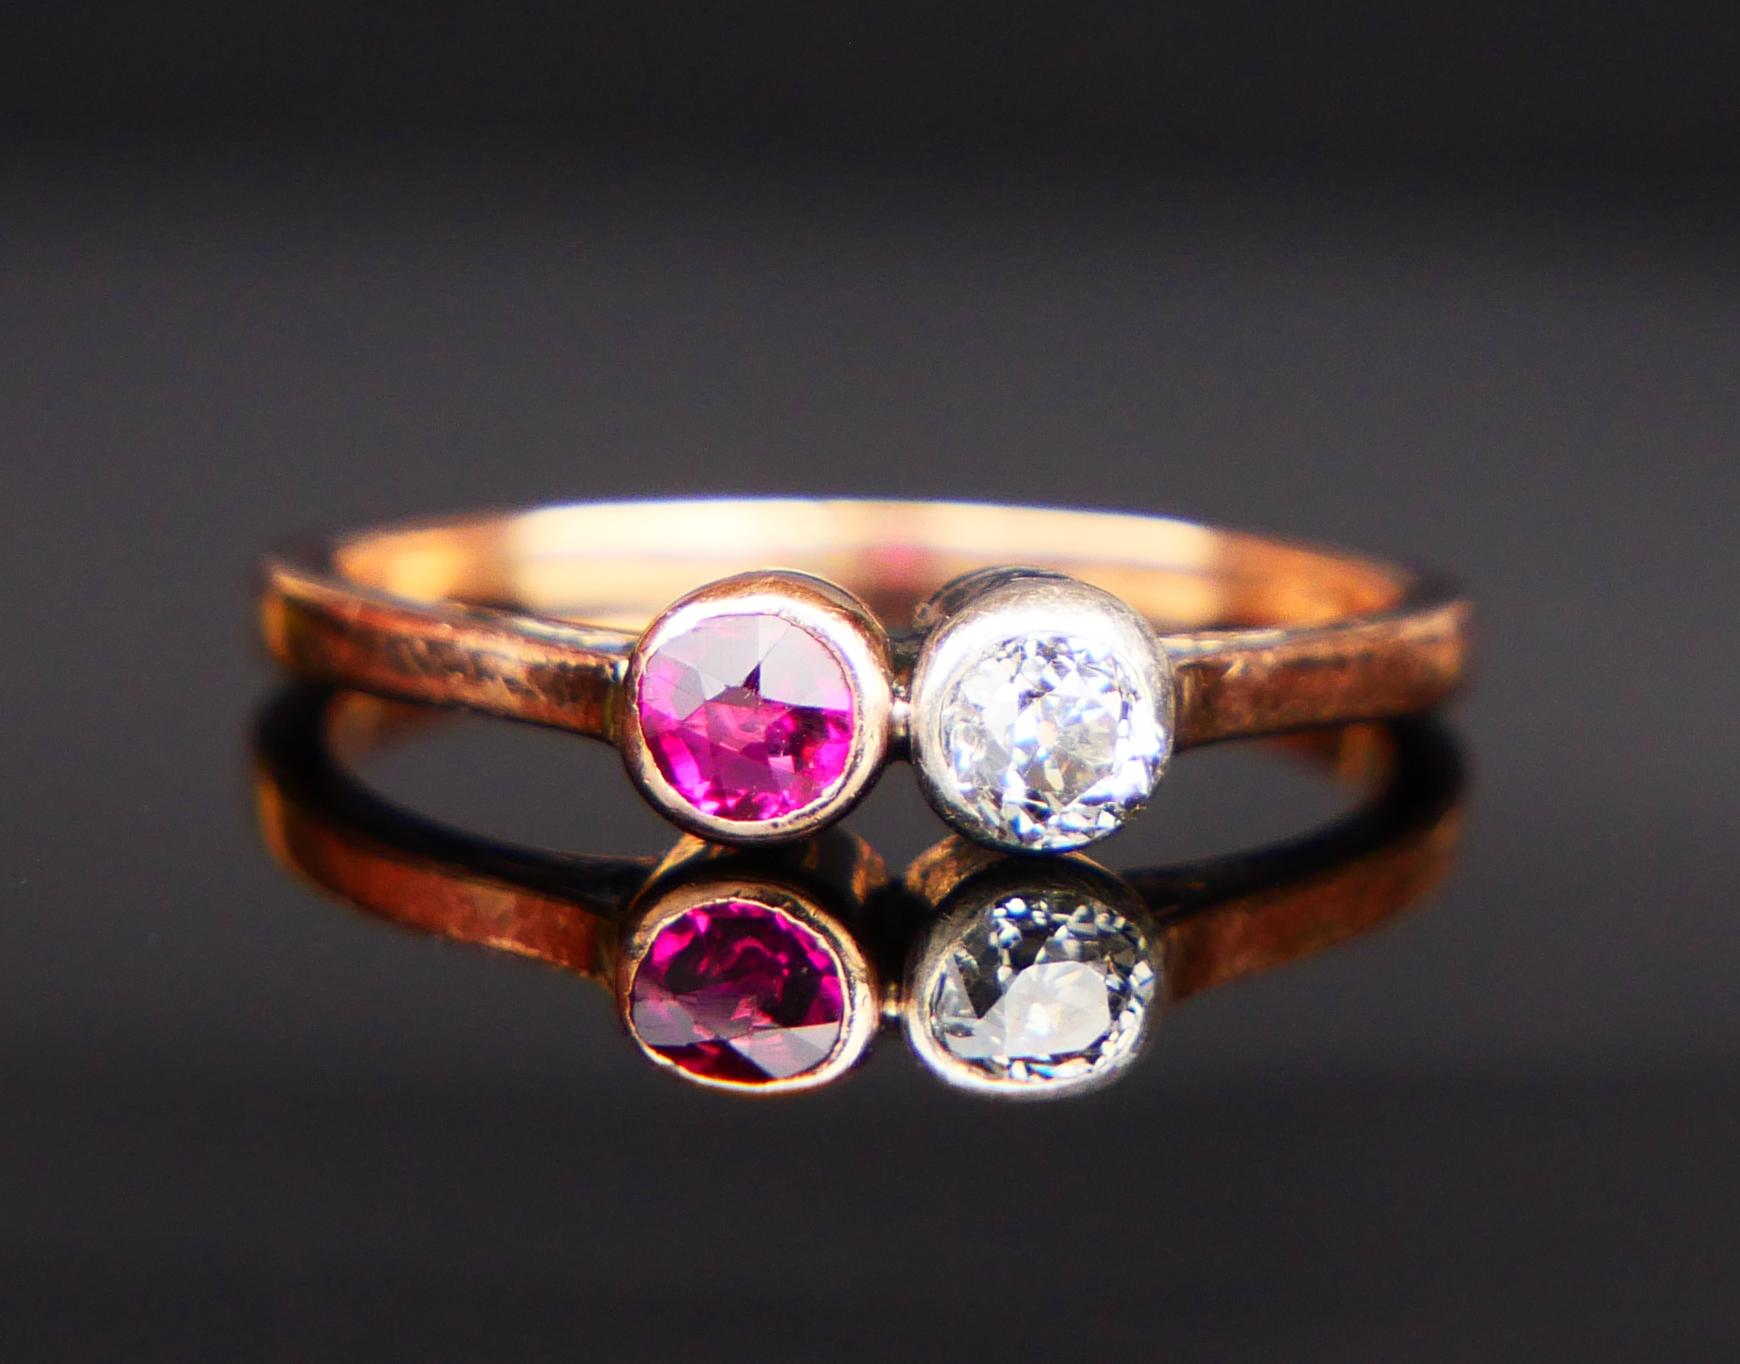 Ein Ring aus den 1920er - 1930er Jahren mit einem Band aus massivem 14K Rose Gold, verziert mit einem Diamanten im alten europäischen Schliff Ø 3,5 mm / ca.0,2 ct /Farbe G,H/SI in einer Silberlünette und einem Rubin im alten Schliff in einer Rose